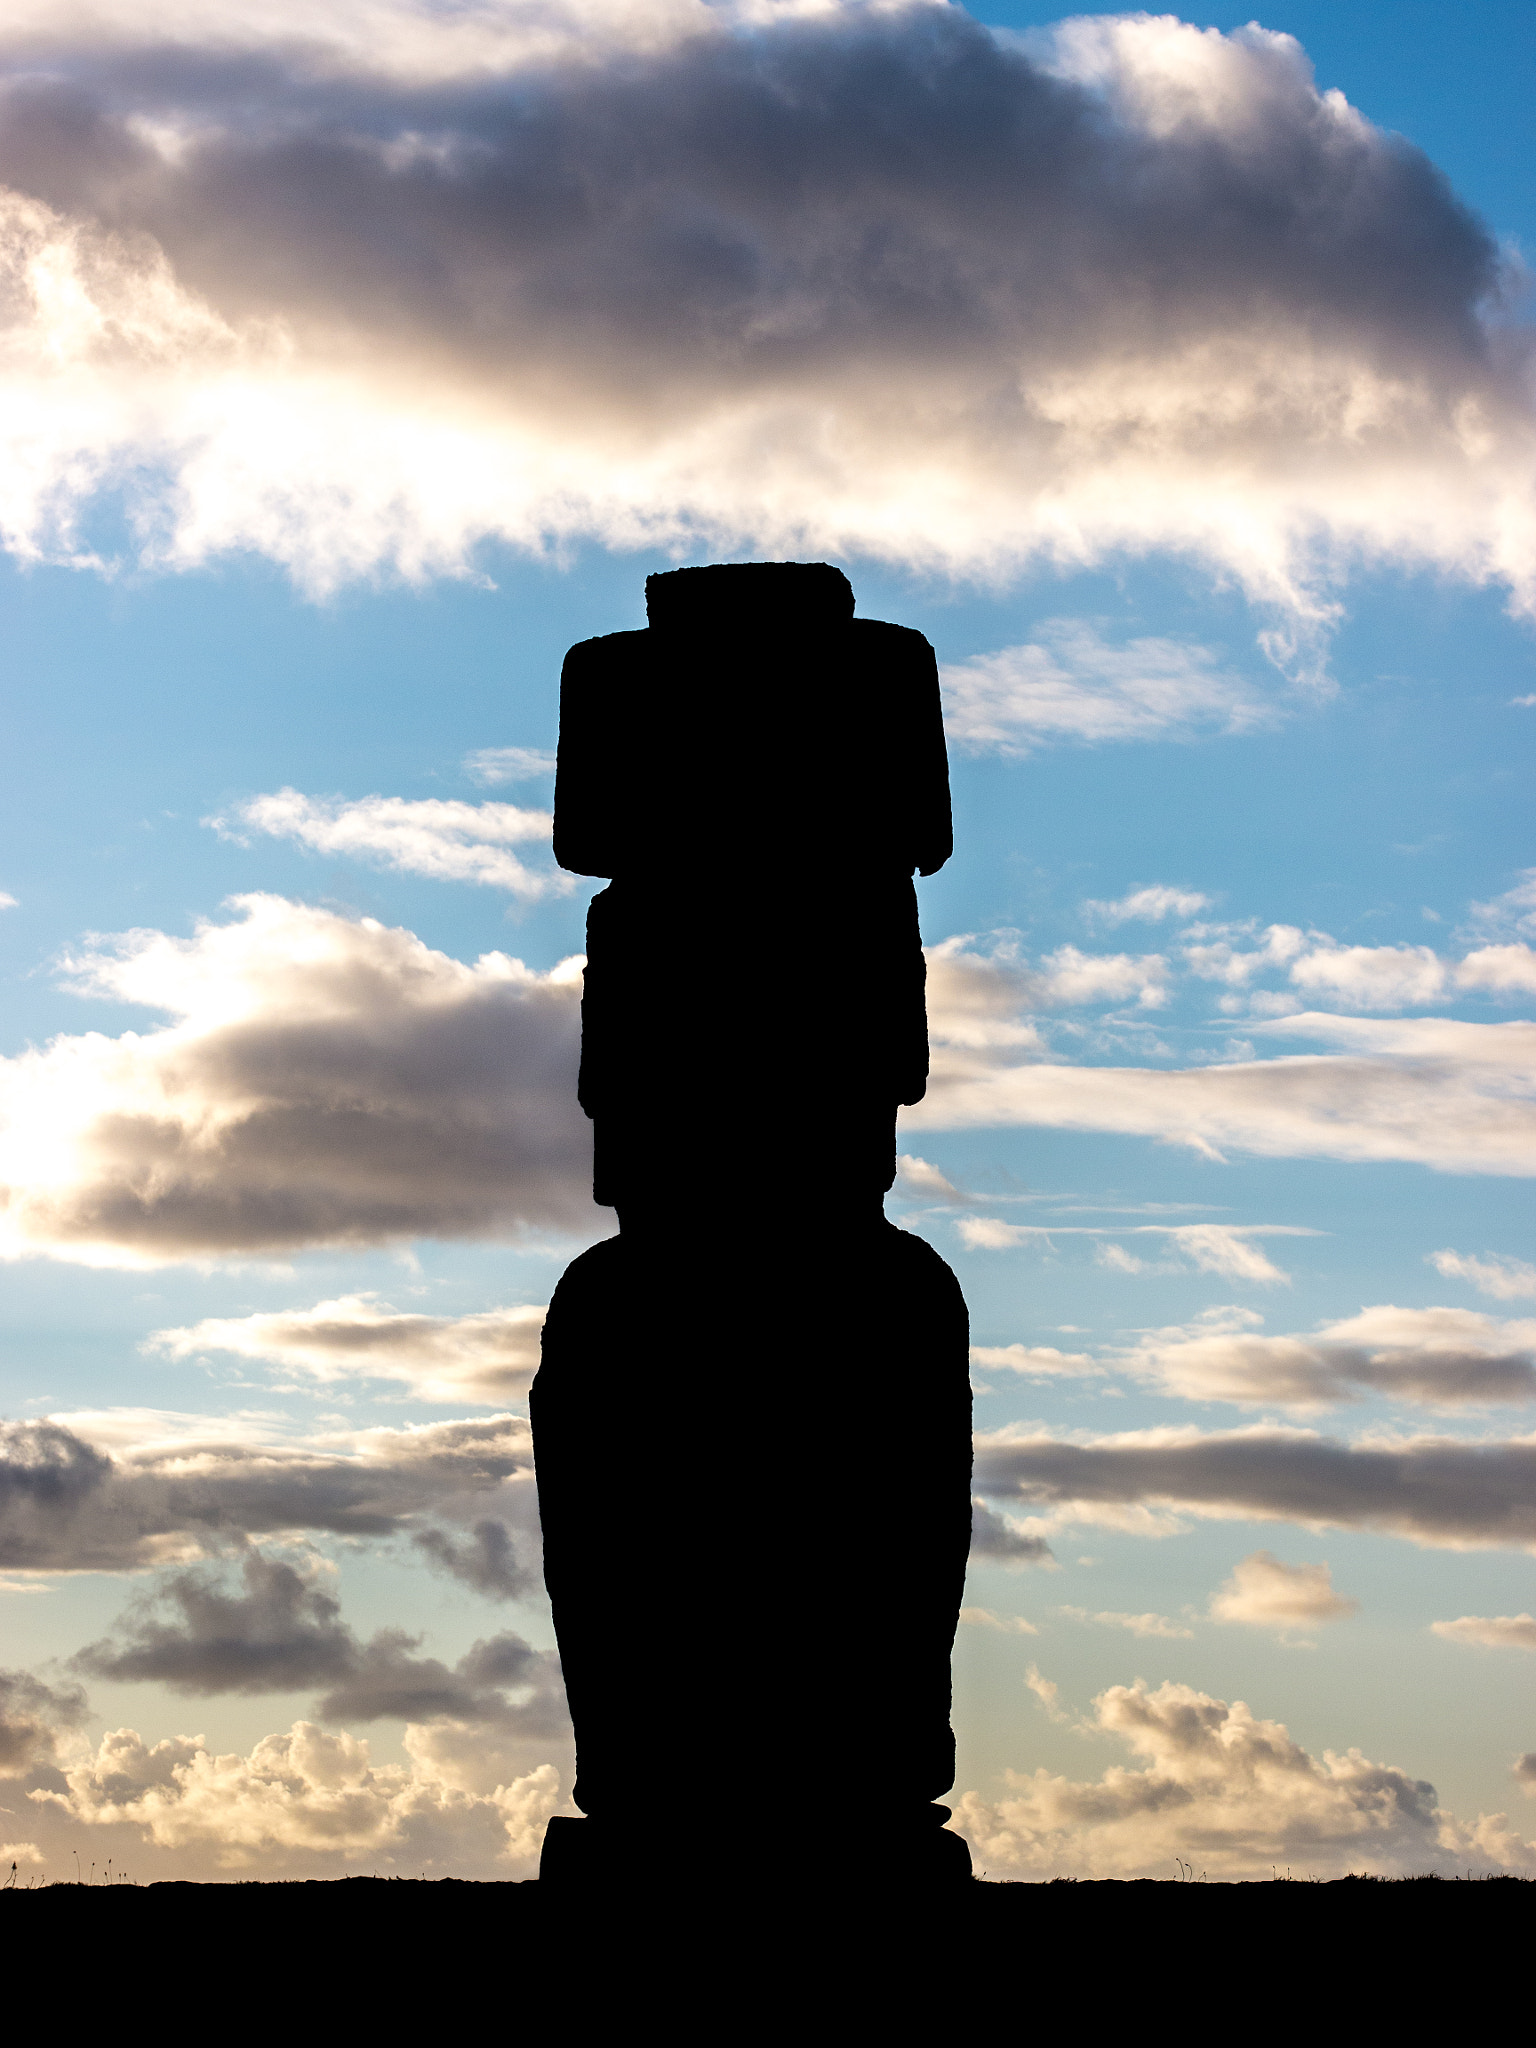 Panasonic Lumix DMC-G5 + Olympus M.Zuiko Digital 45mm F1.8 sample photo. A moai in ahu tahai photography